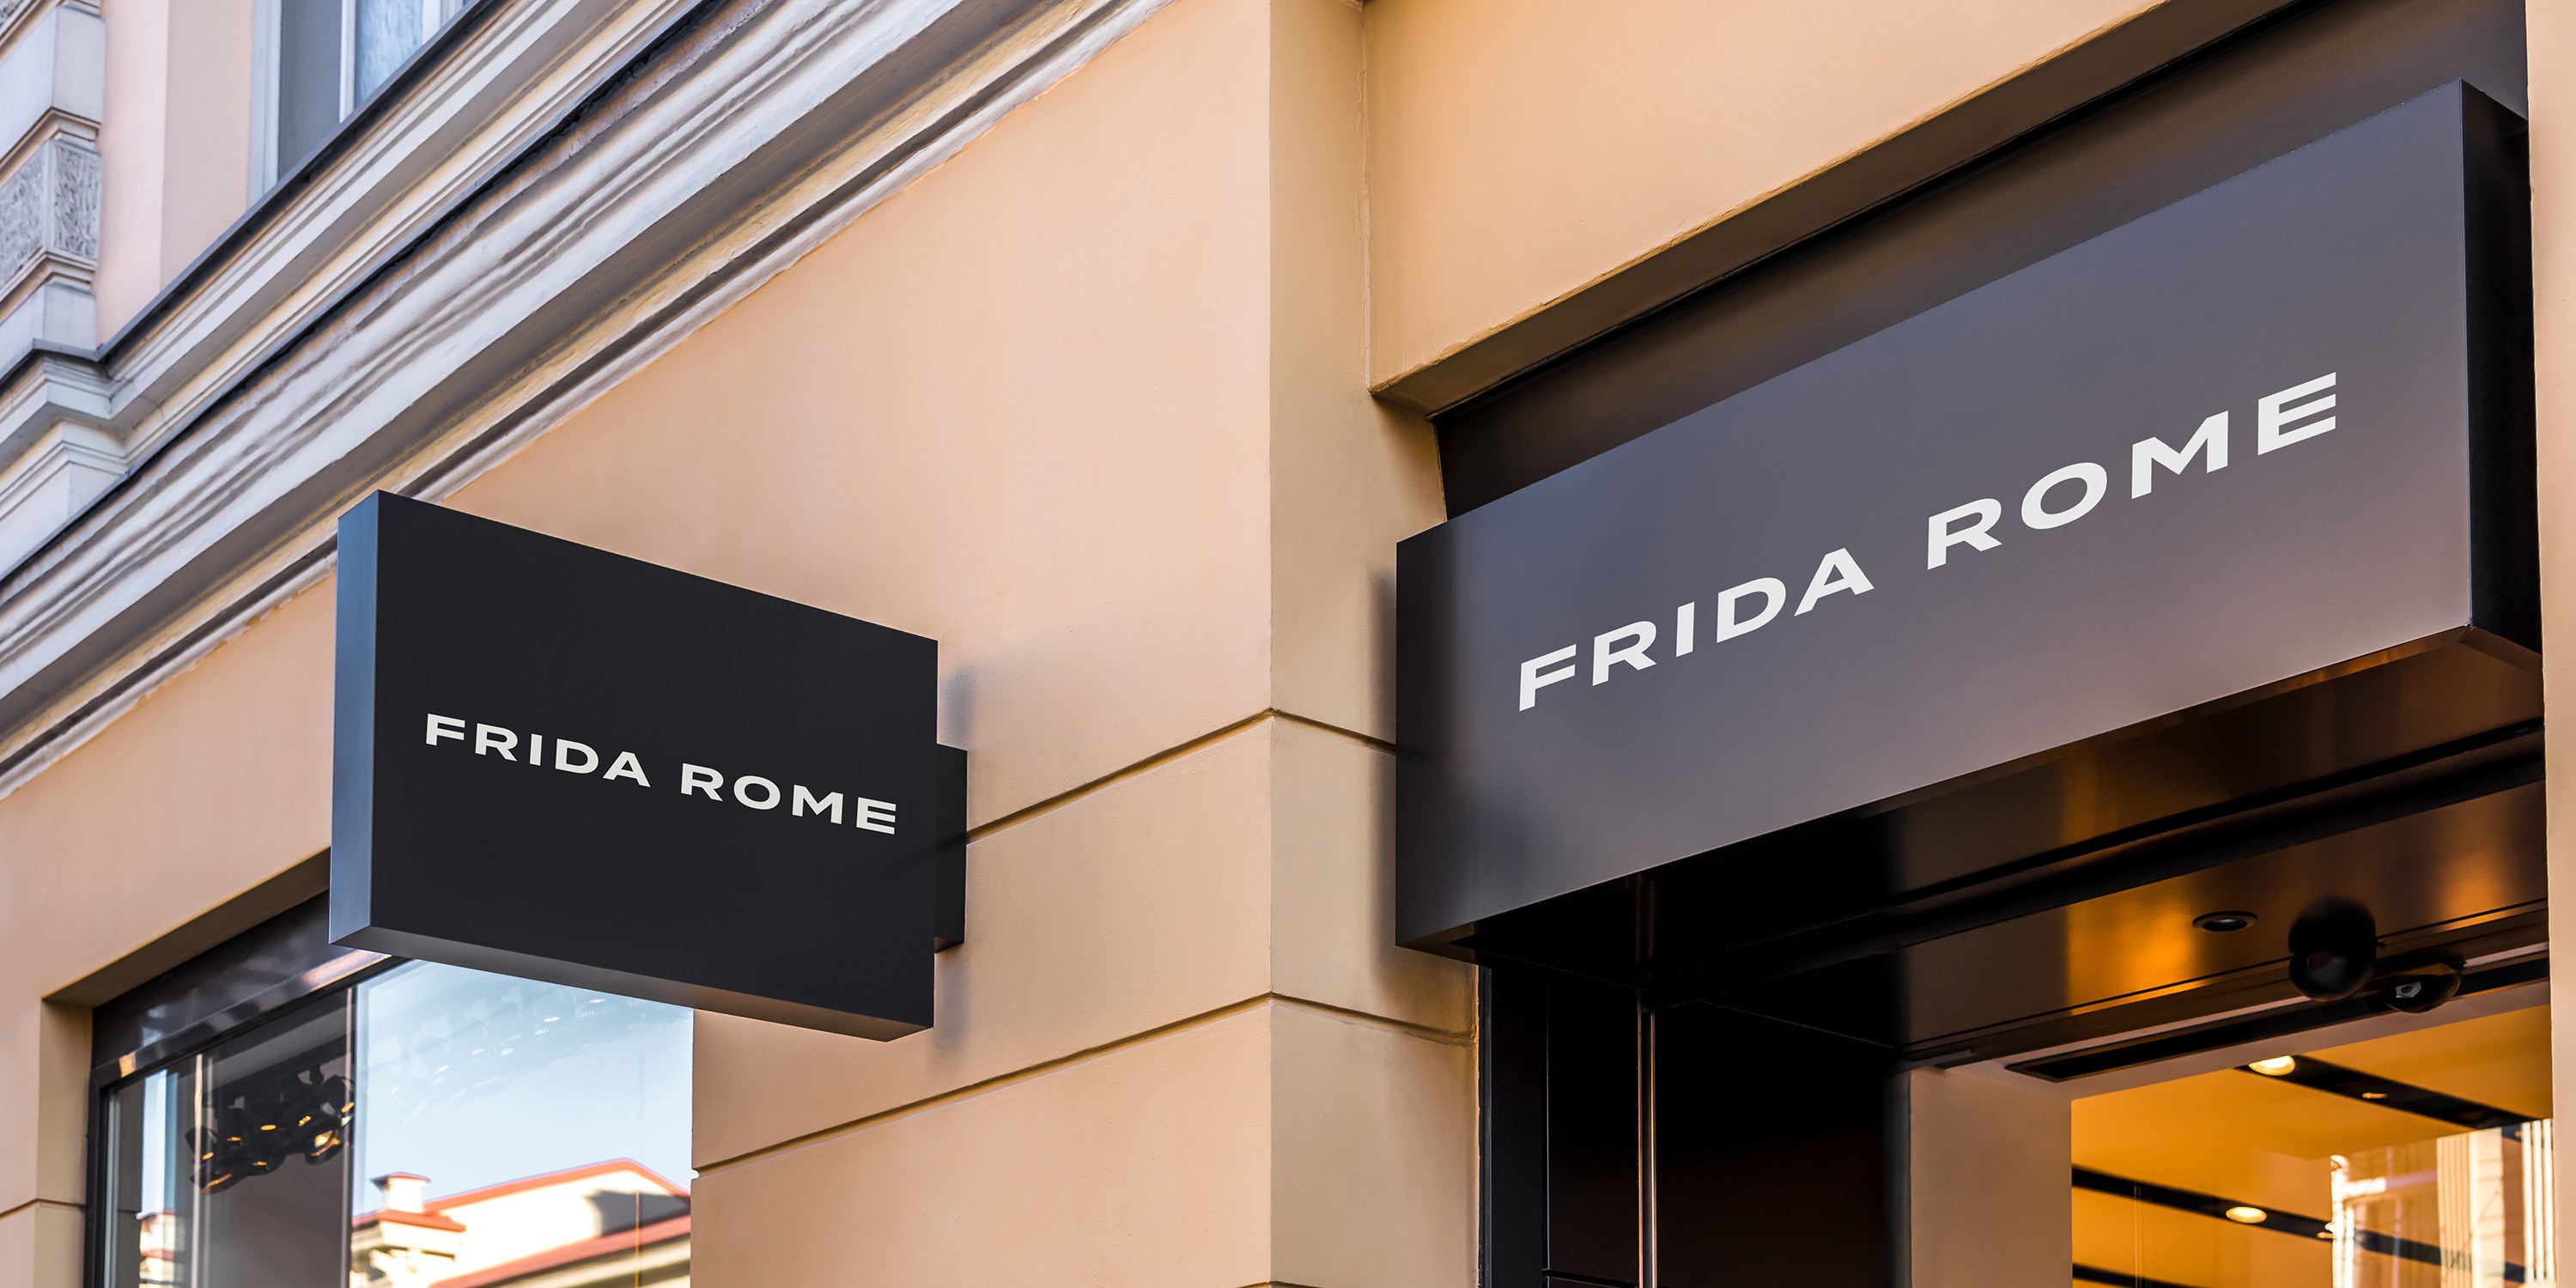 Frida rome logo storefront